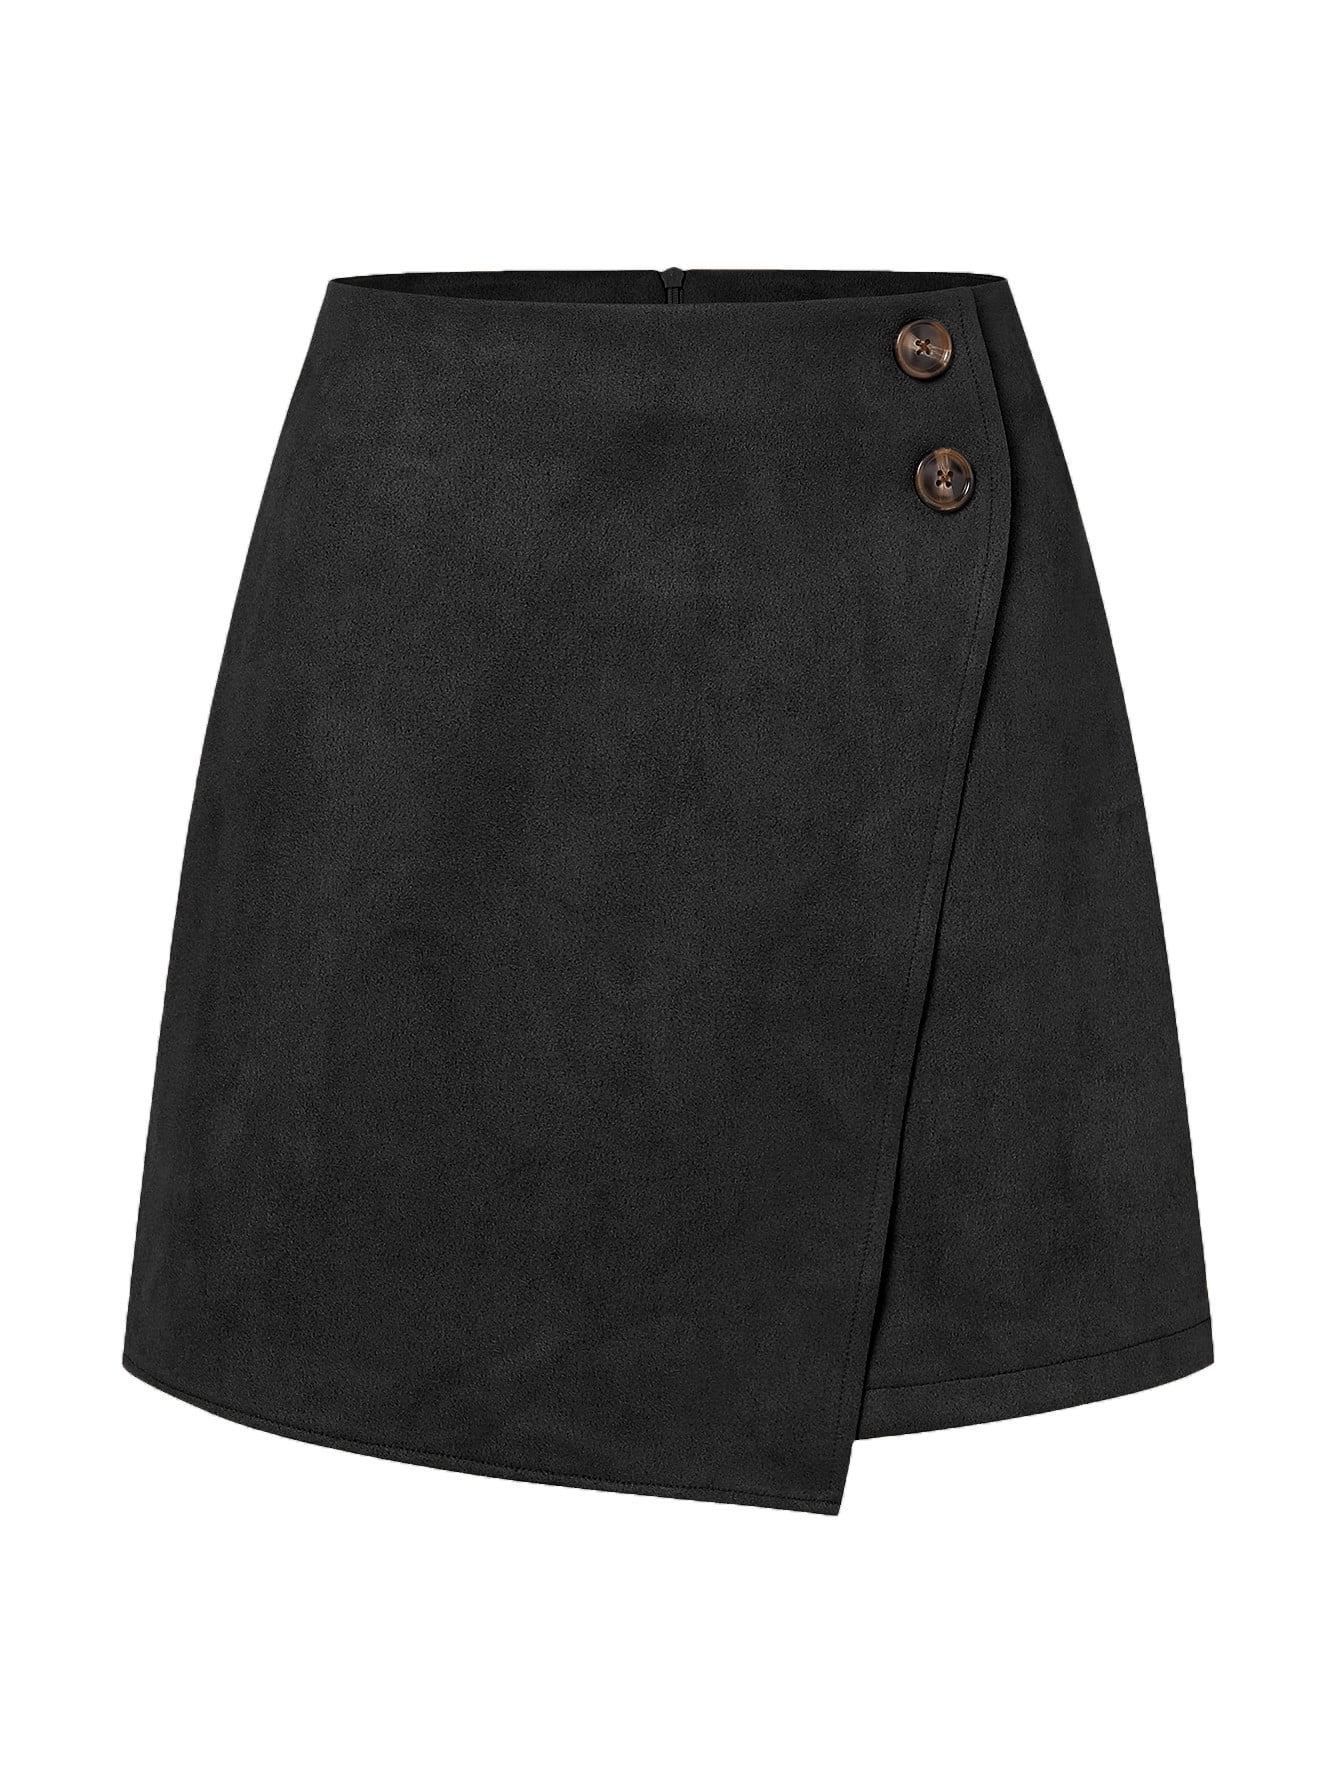 Wenseny Women Asymmetric High Waist Short Wrap Skirt Suede Casual A ...